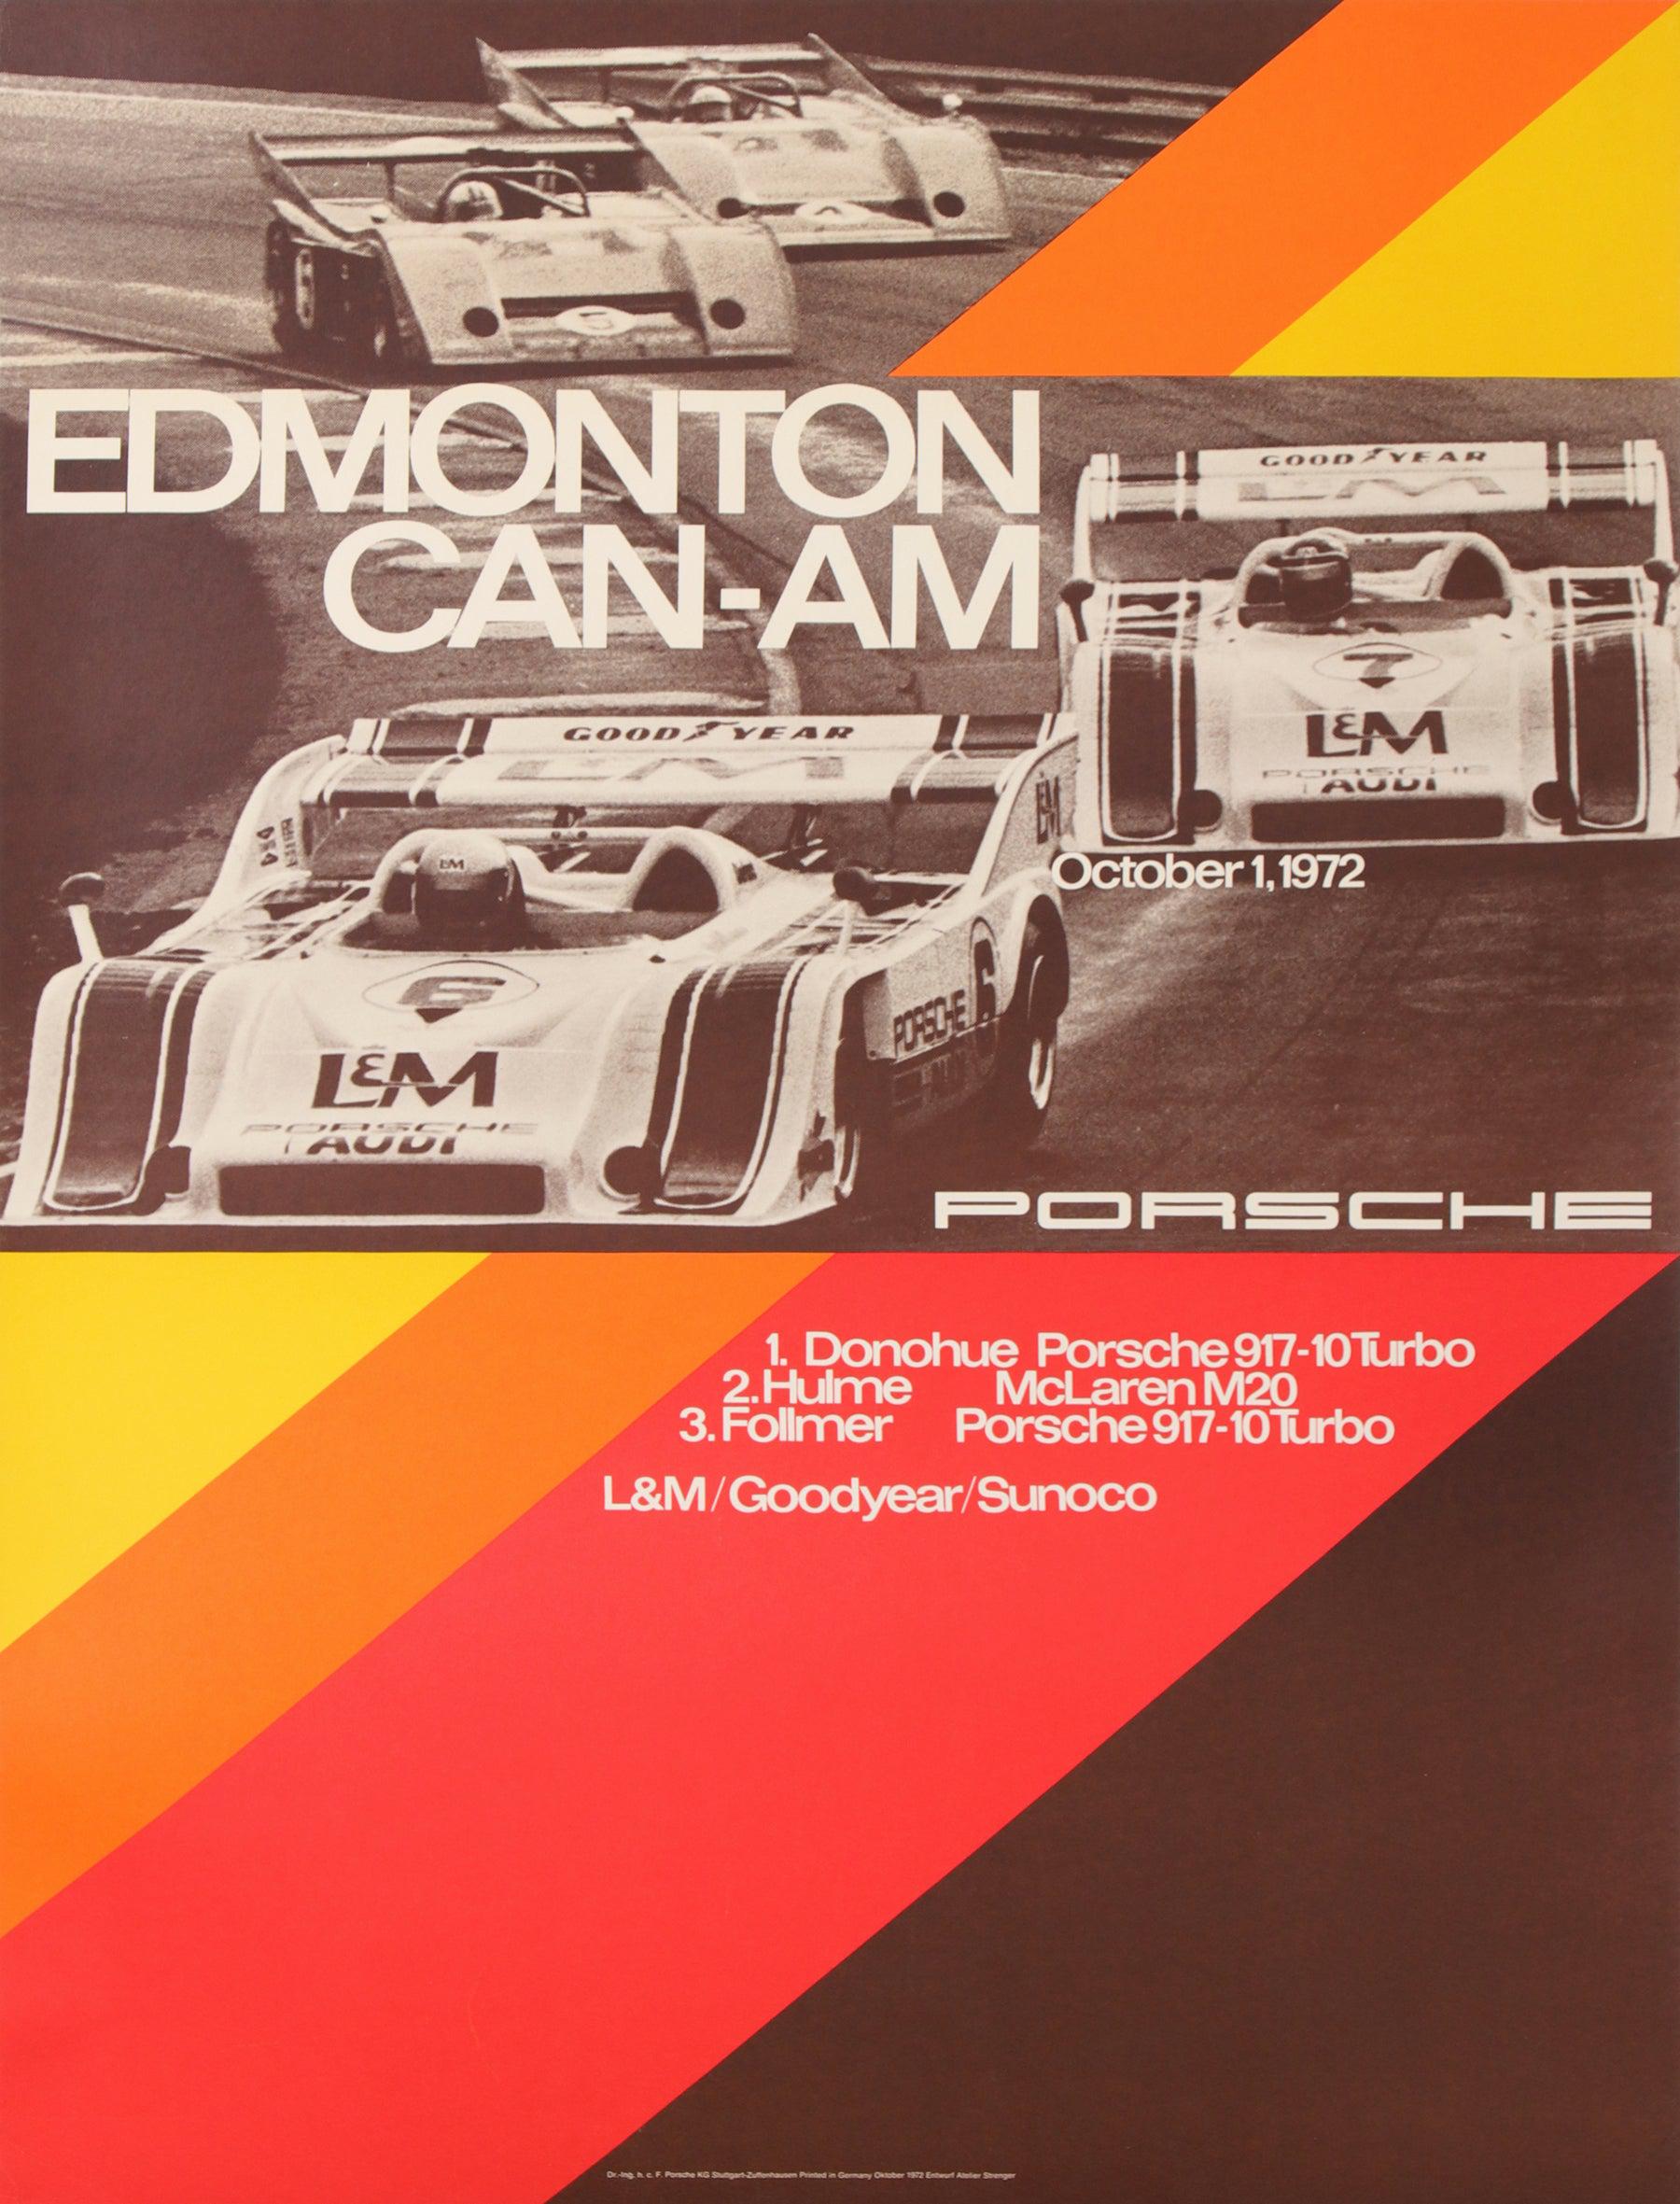 Original Vintage Porsche Car Race Poster 1972 Edmonton Can-Am Mark Donohue NASCAR